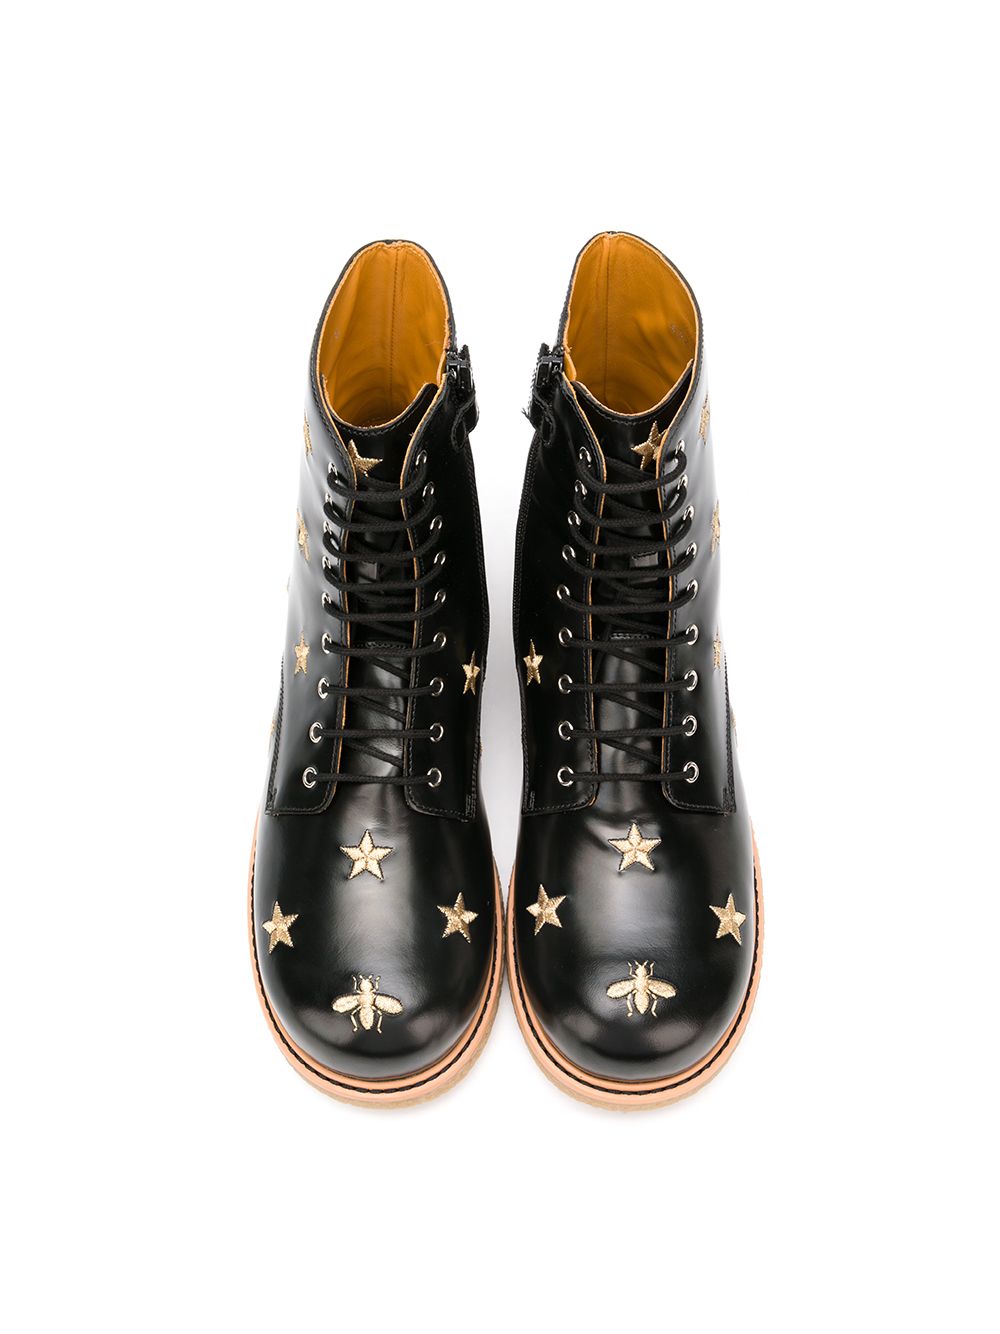 фото Gucci kids ботинки с вышивкой пчел и звезд